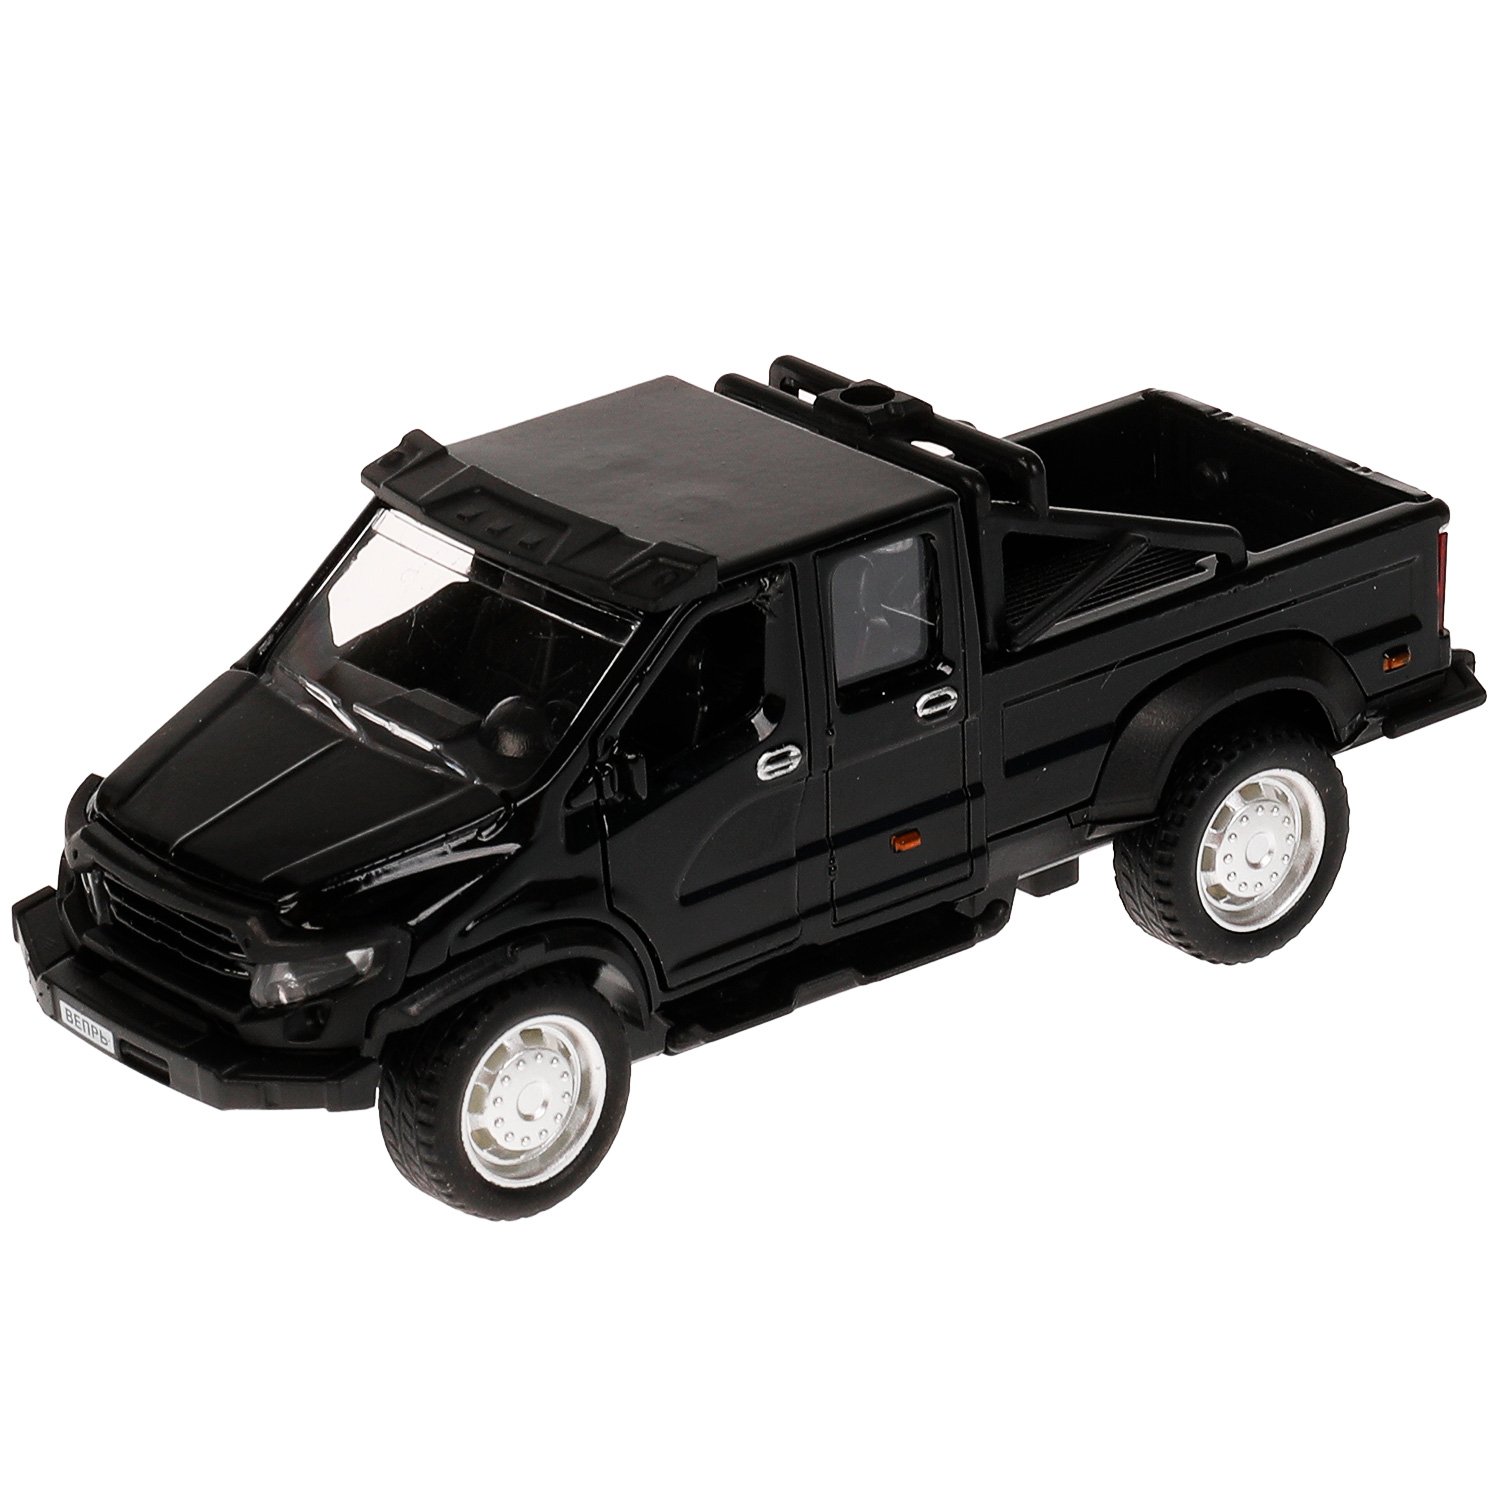 Машина металл ГАЗ Вепрь, 12,5 см, (откр двери, черн,)  инерц, в коробке